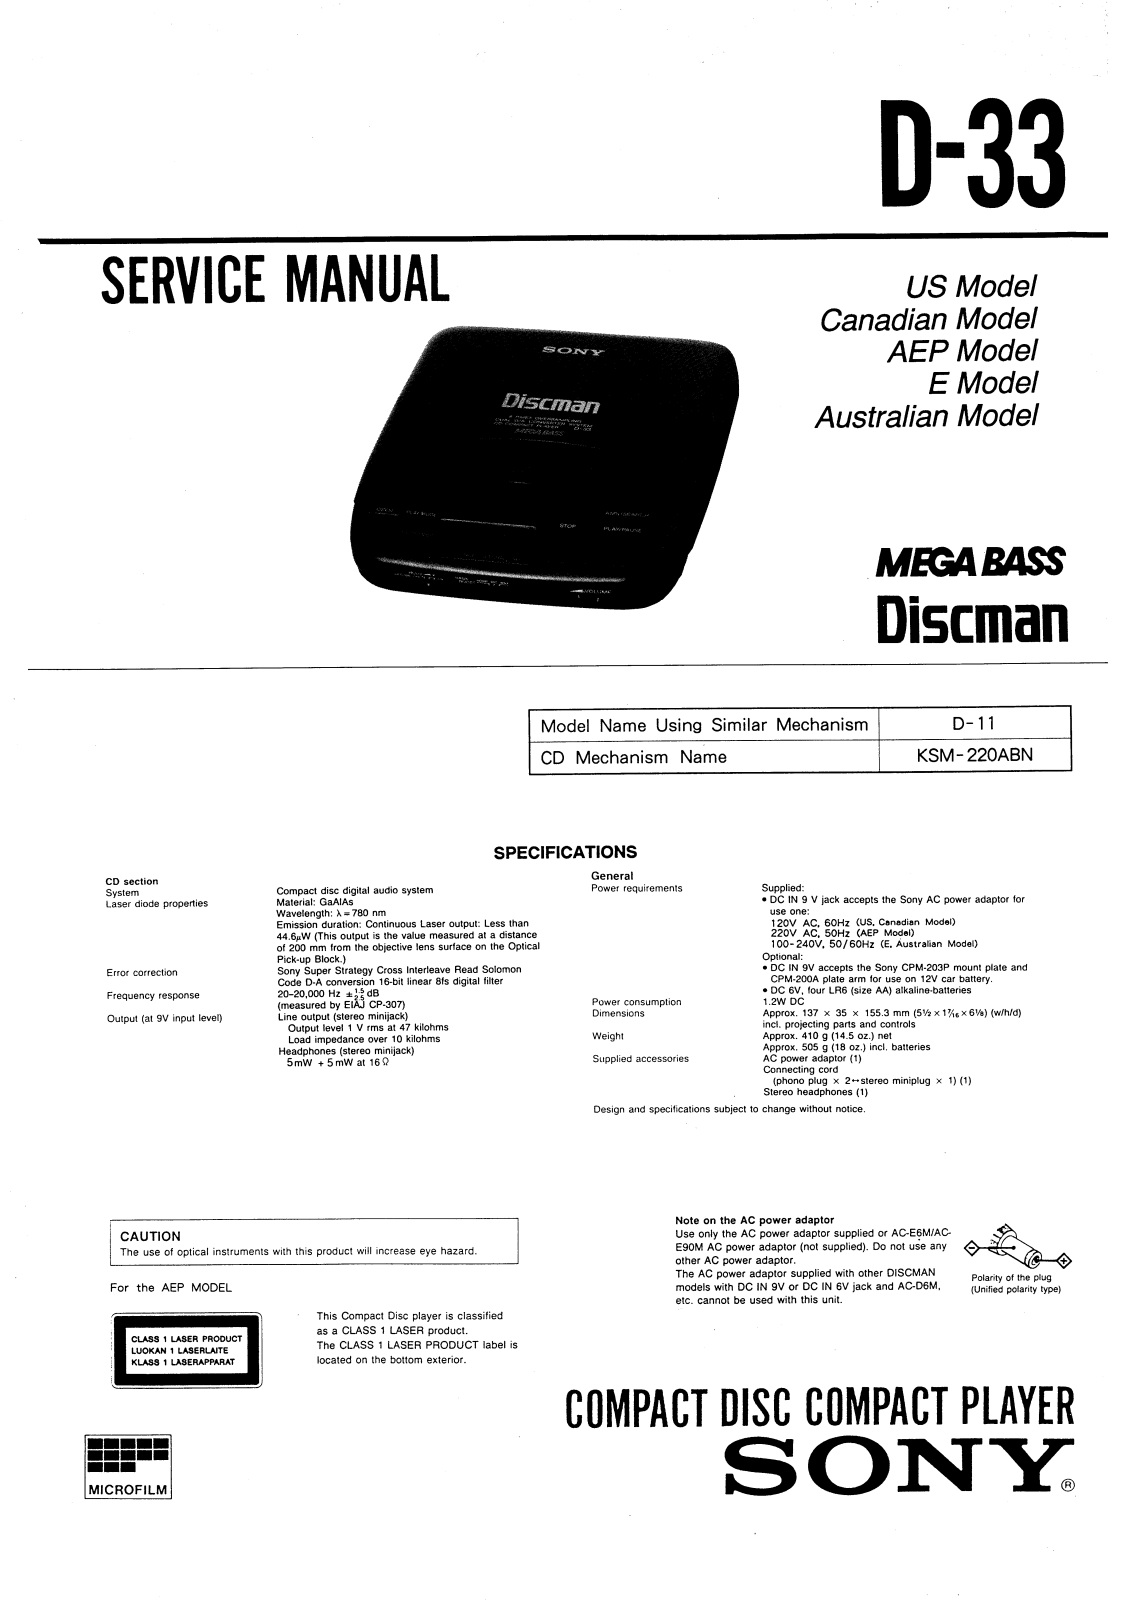 Sony D-33 Service manual